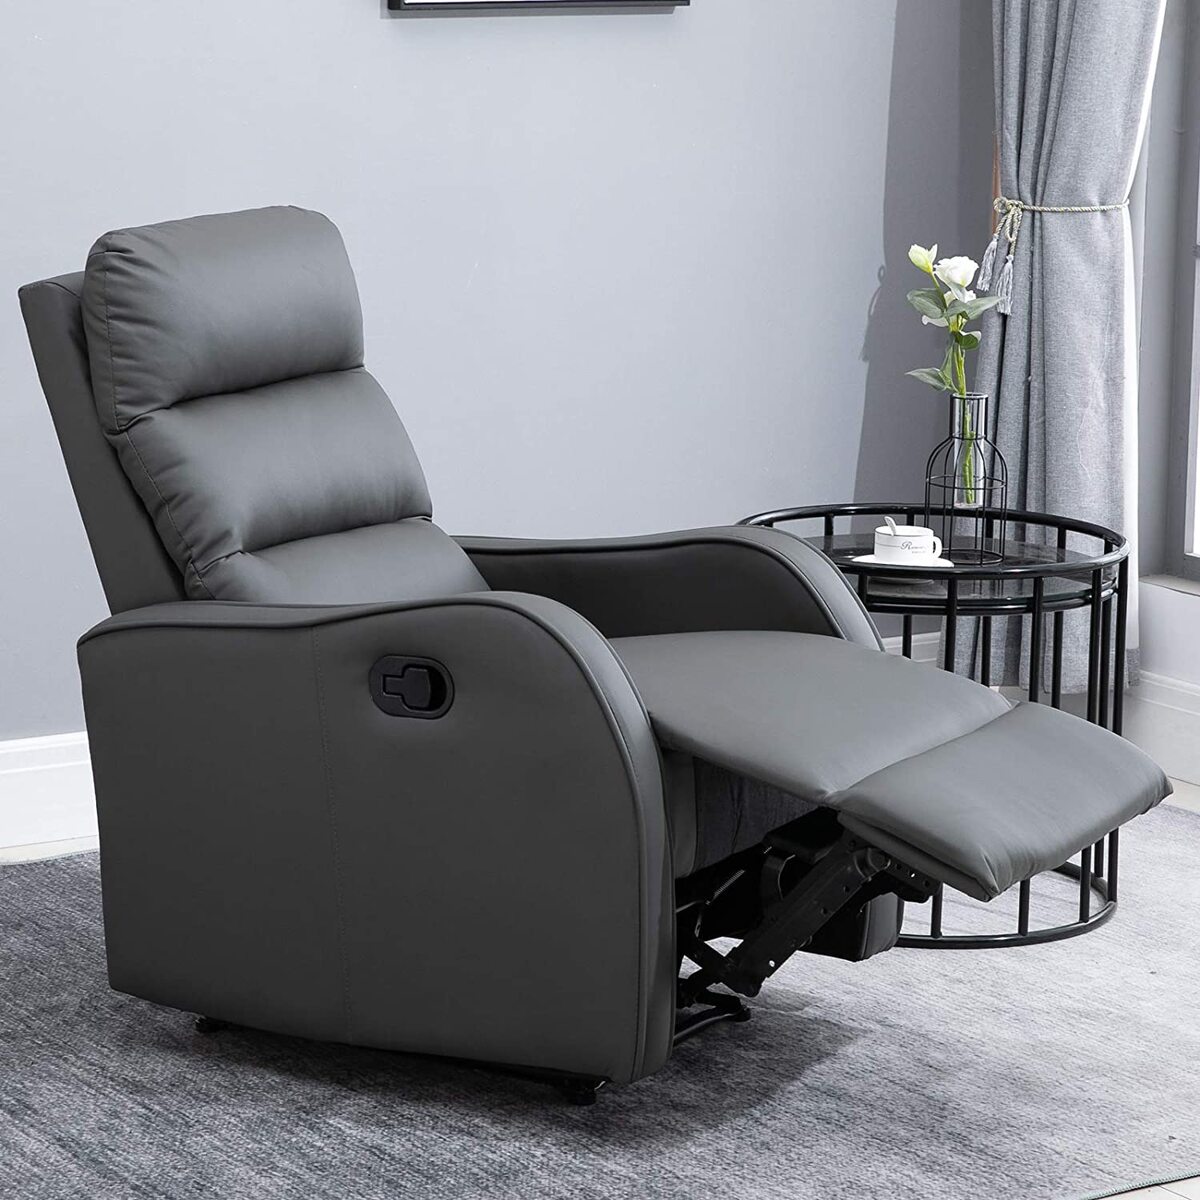 La característica más importante de los sillones relax es la durabilidad.